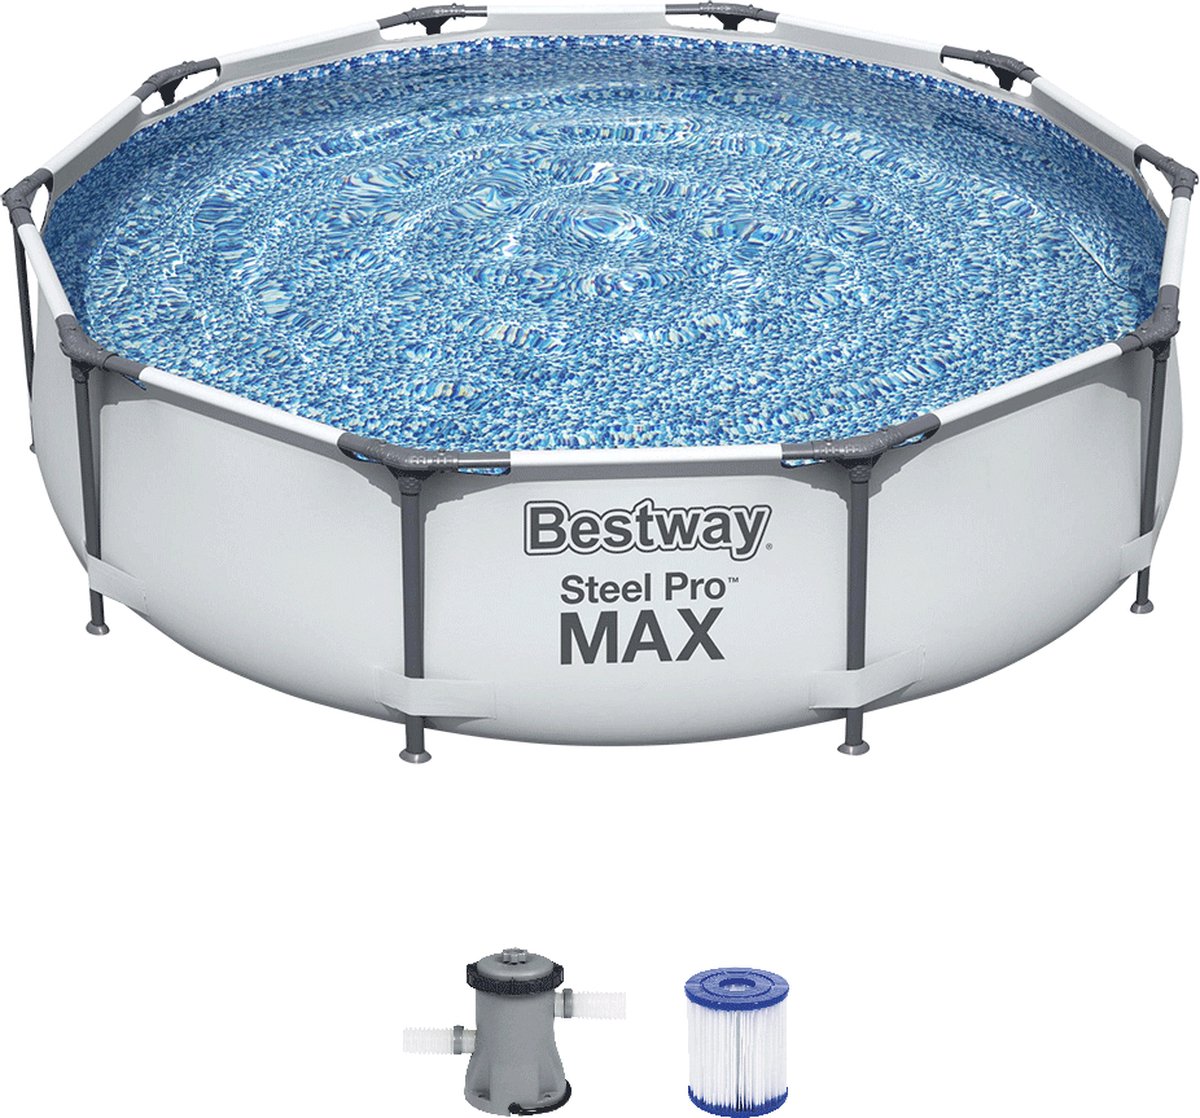 Bestway Steel Pro MAX Zwembad- 305 x 76cm - Bestway